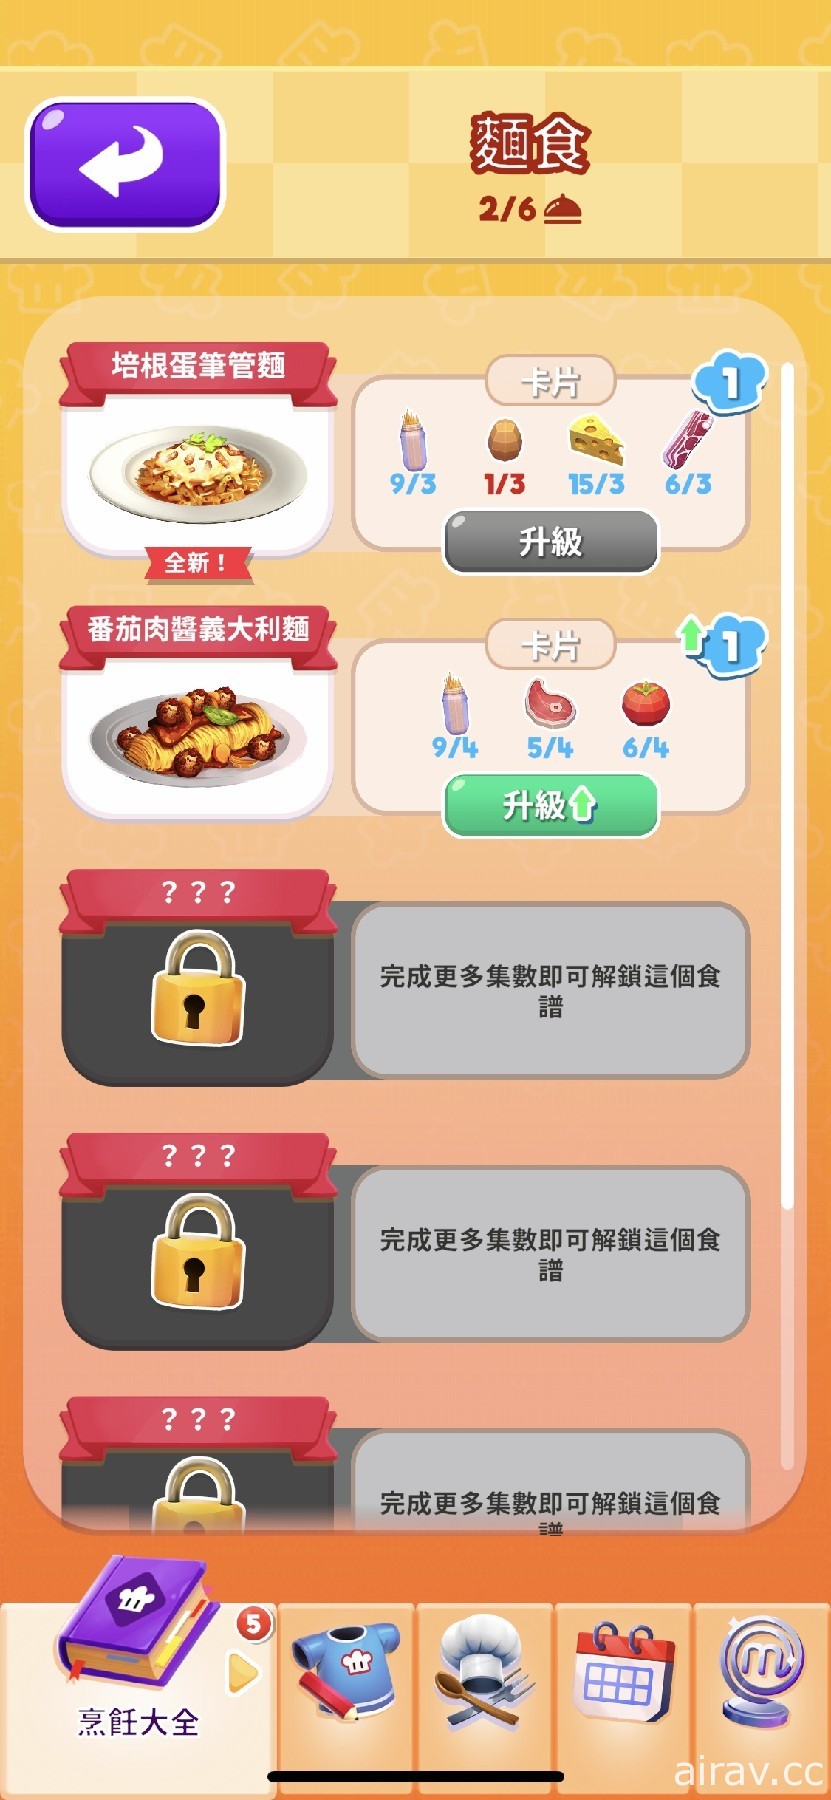 趣味烹饪竞赛游戏《MasterChef: Let’s Cook》于 Apple Arcade 推出 展现厨艺的时刻到了